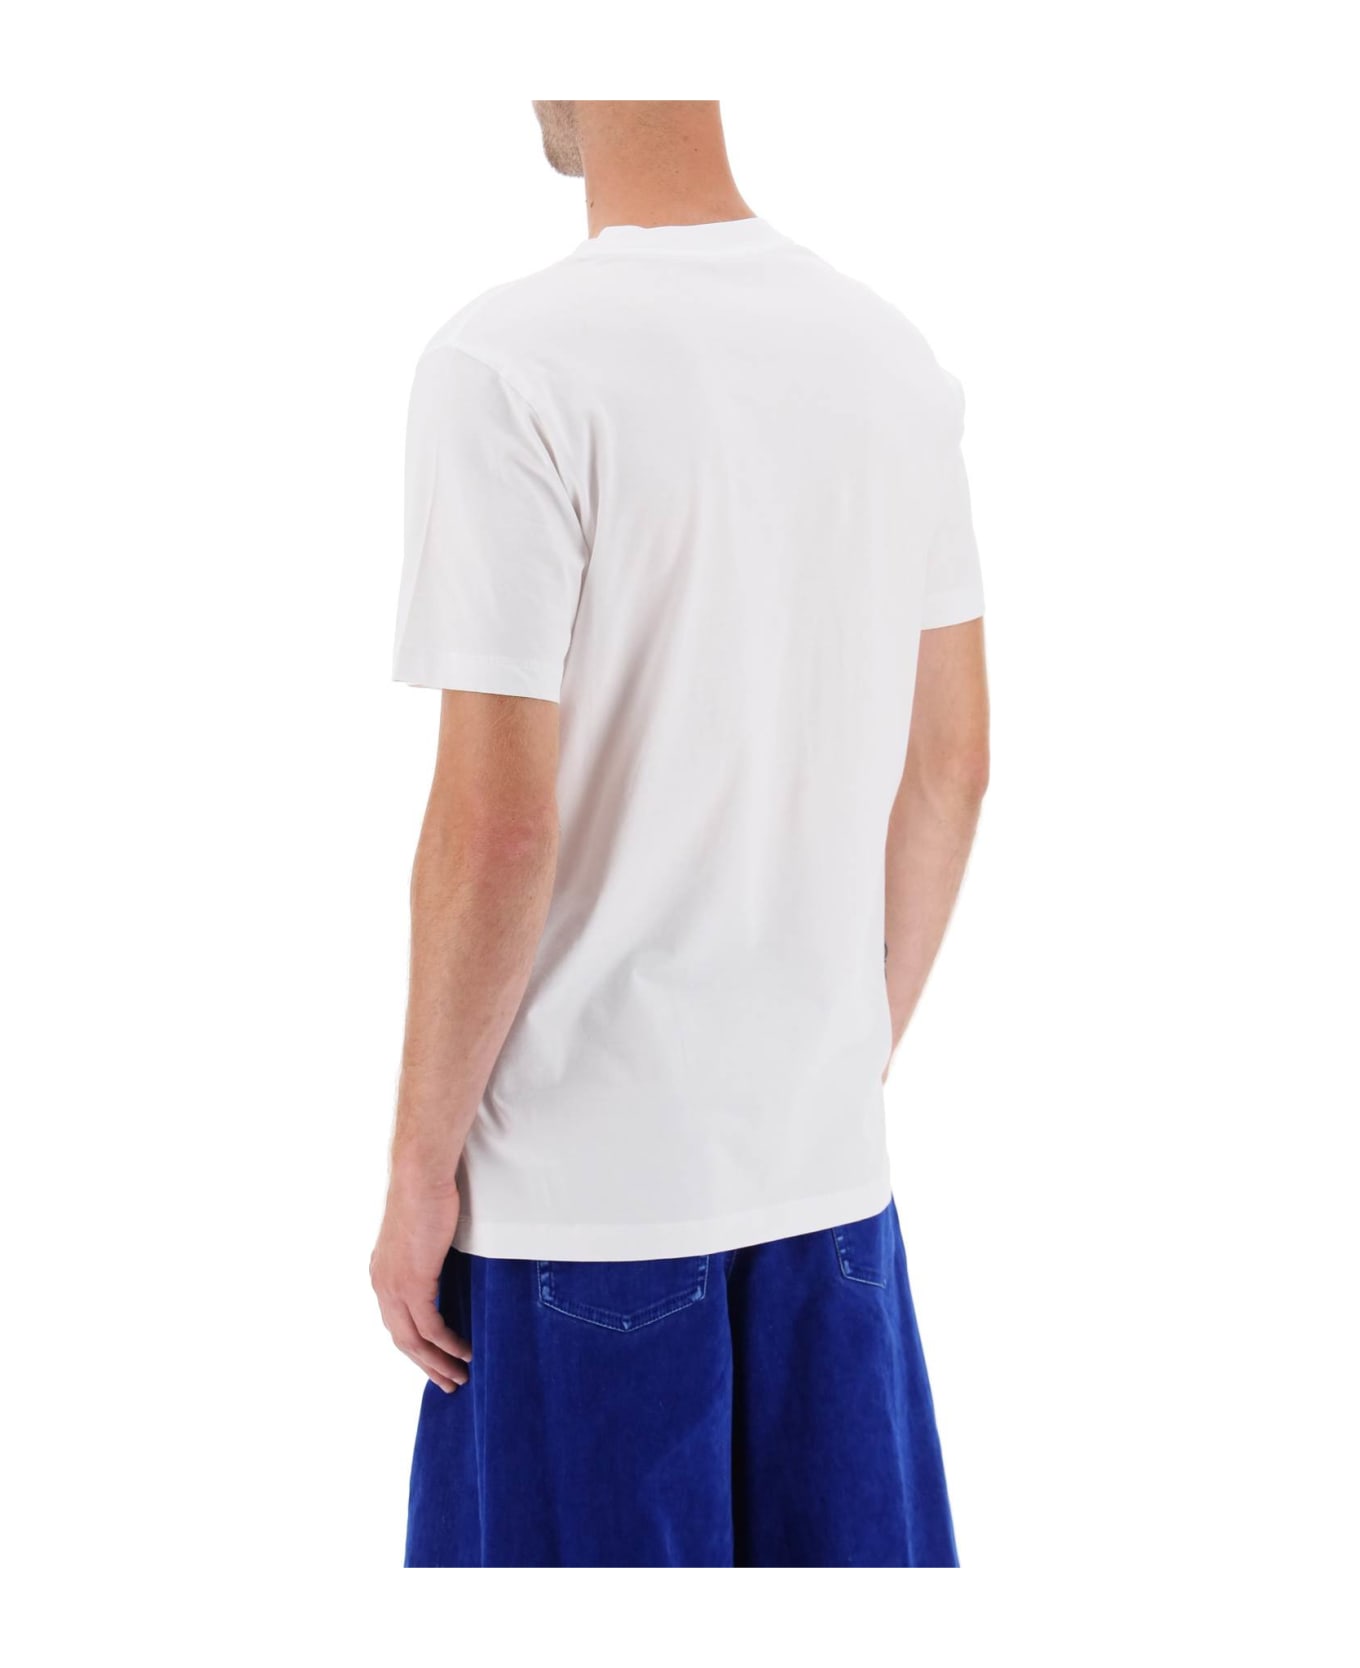 Marni T-shirt Marni - White シャツ